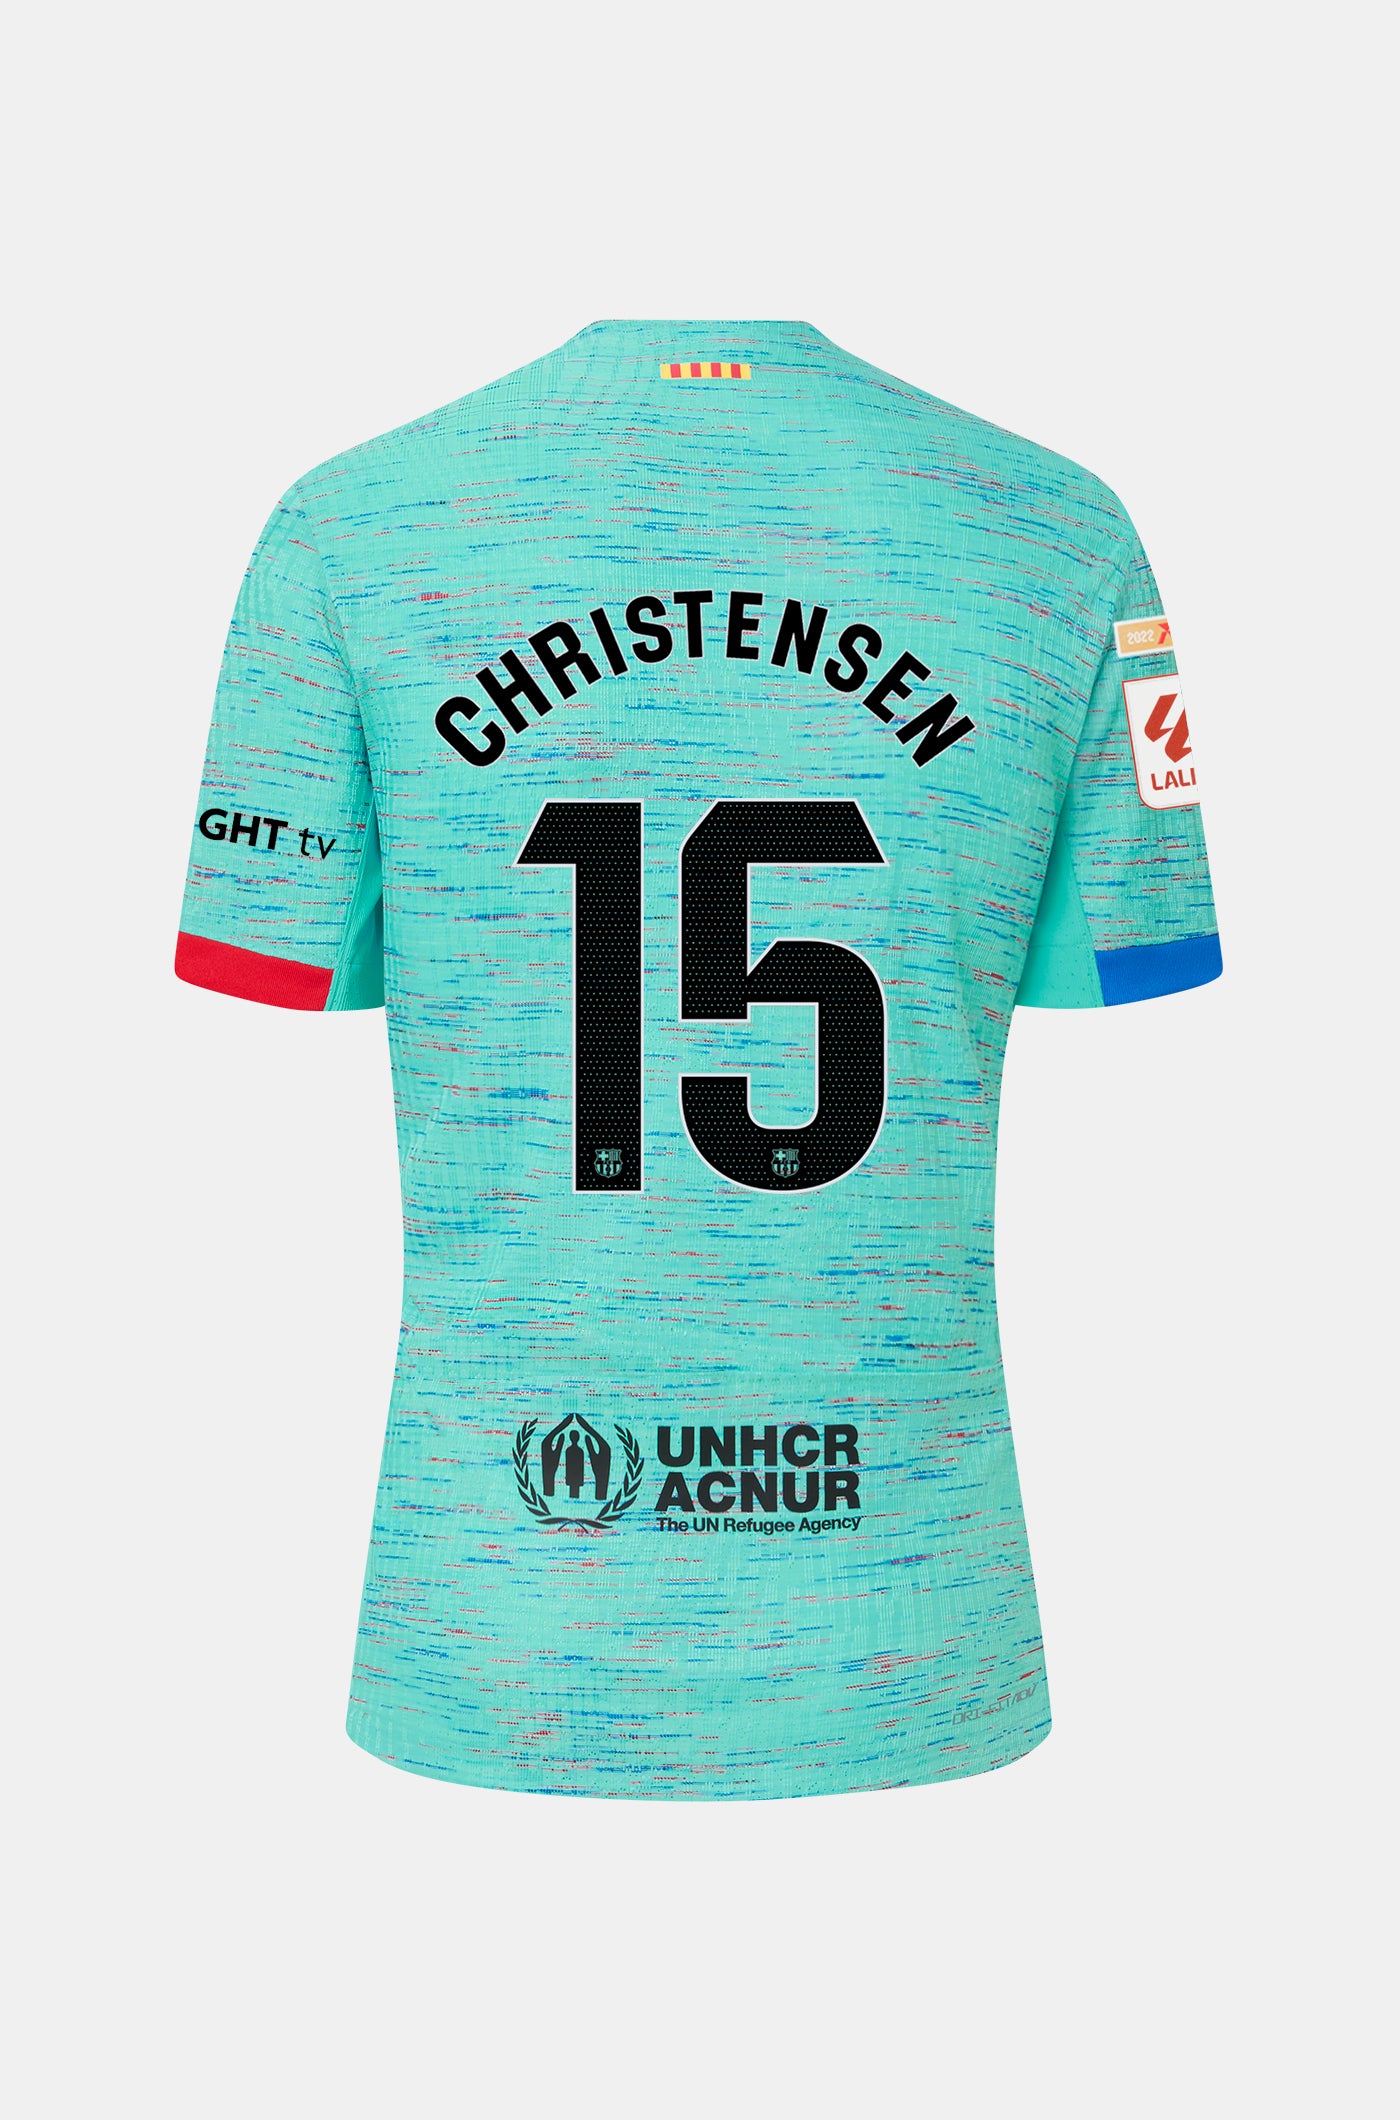 LFP FC Barcelona third shirt 23/24 Player’s Edition  - CHRISTENSEN